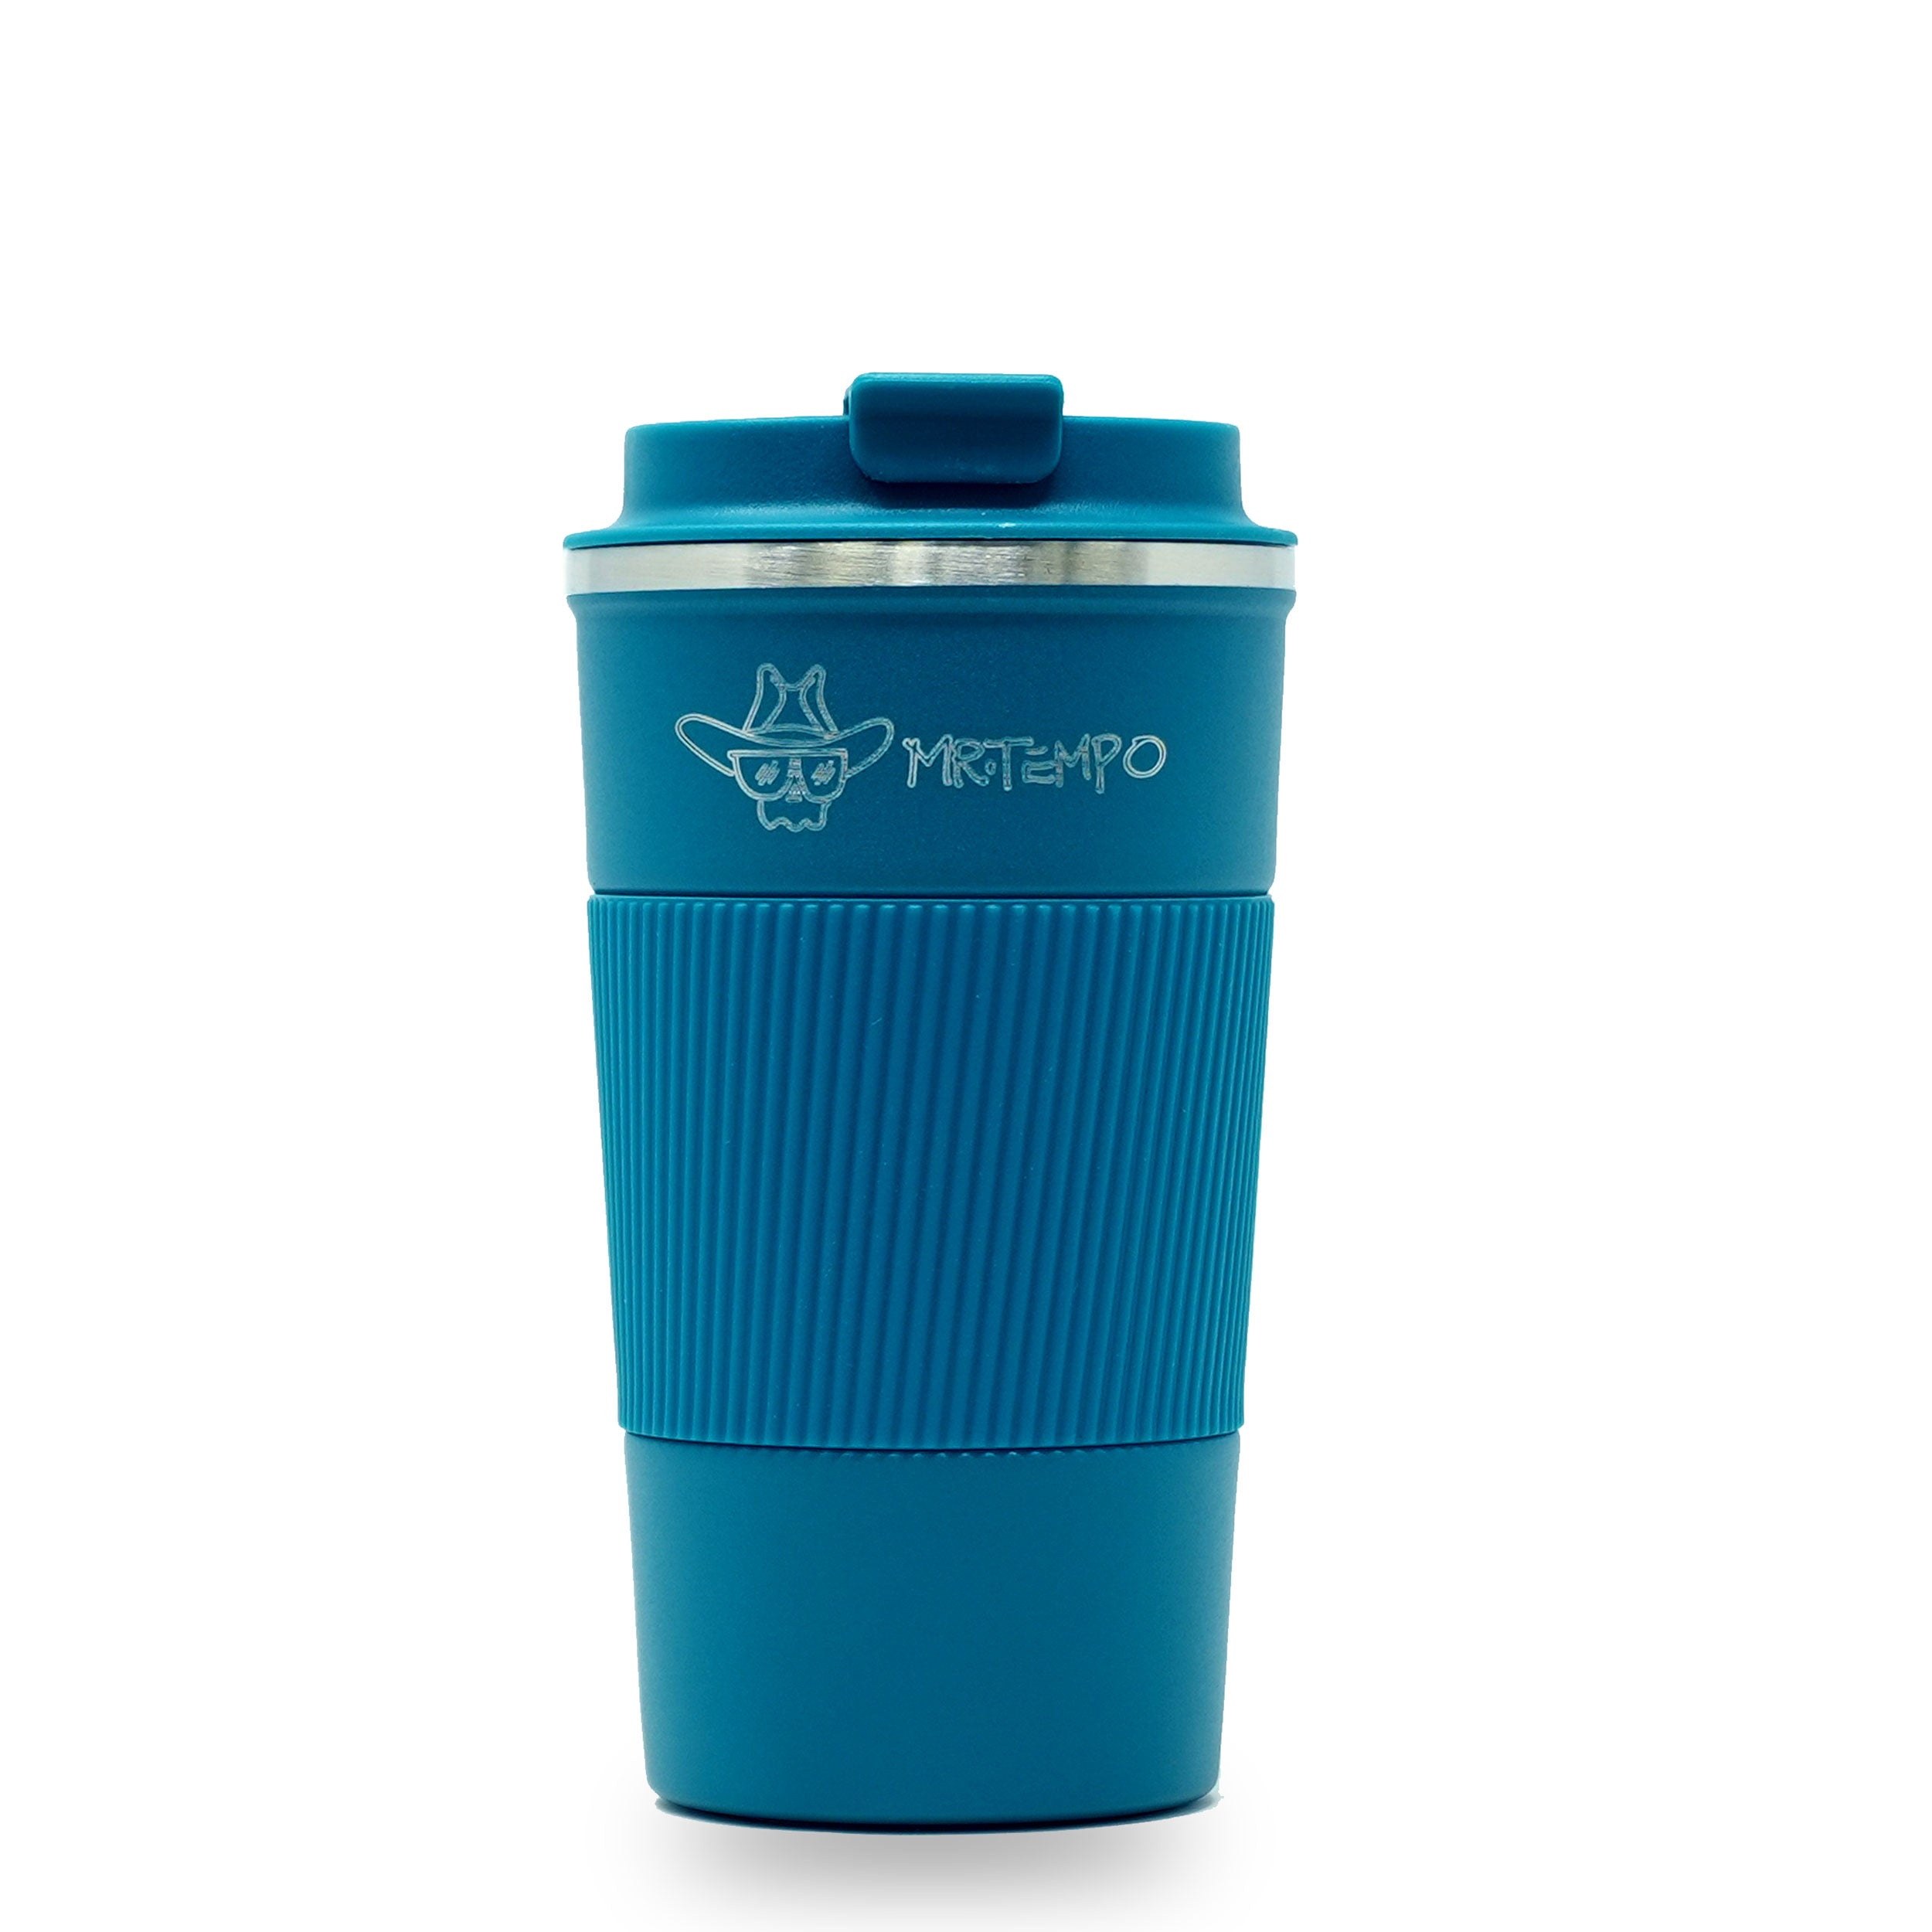 Mr.Tempo Thermo Travel Mug (Blue)